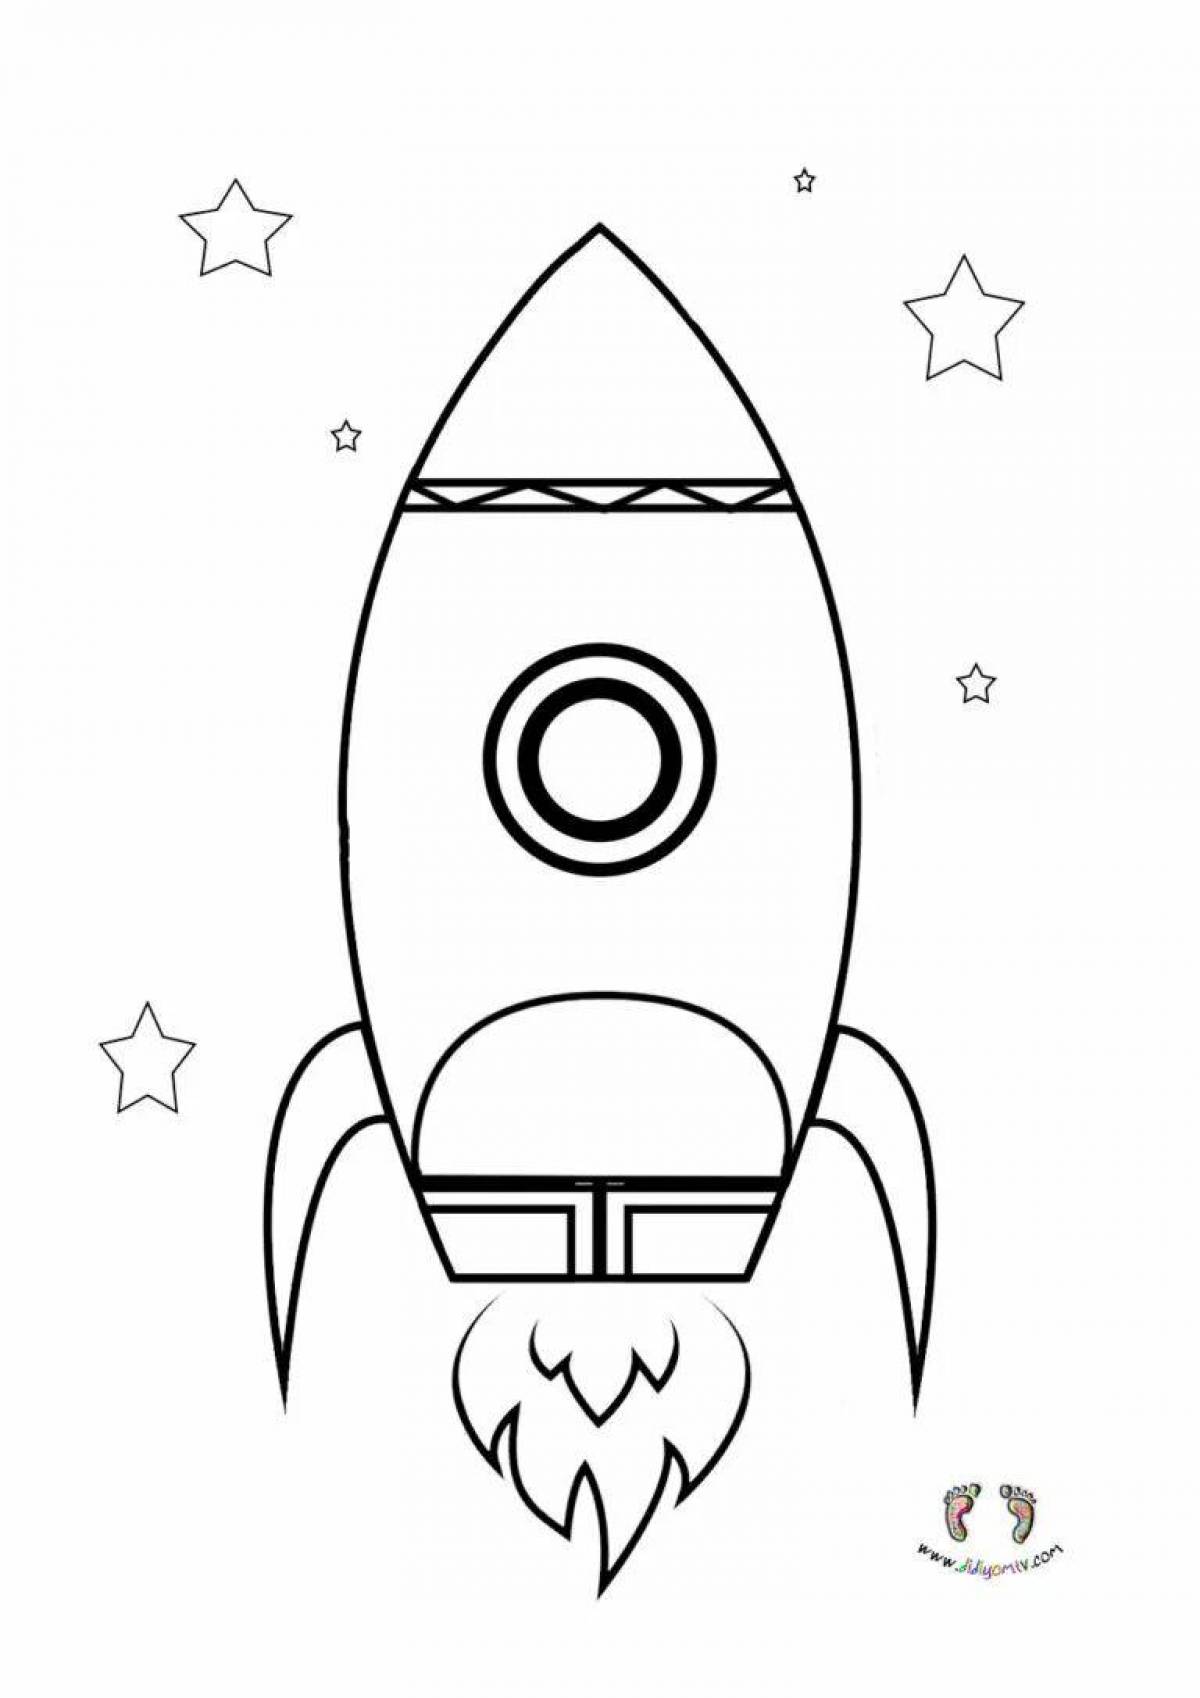 Раскраска ракета для детей 4 лет. Ракета раскраска. Ракета раскраска для детей. Схематичный рисунок ракеты. Ракета рисунок для детей.